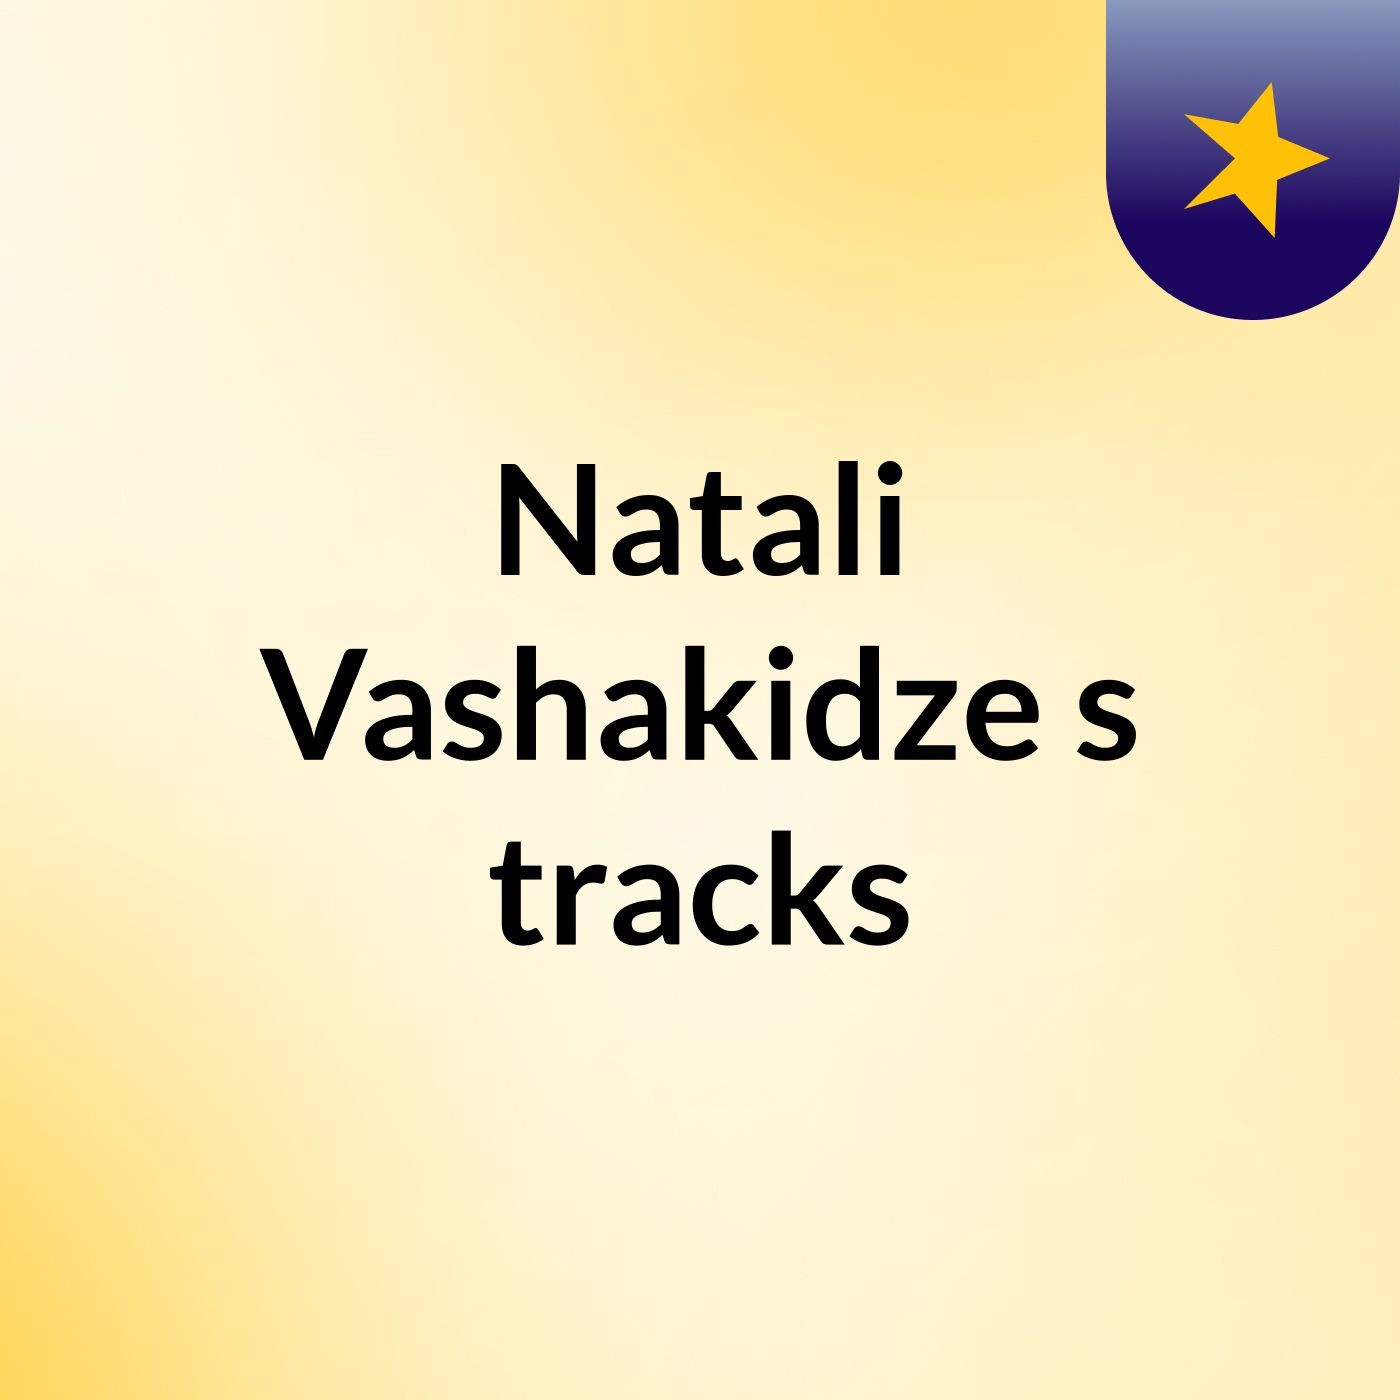 Natali Vashakidze's tracks